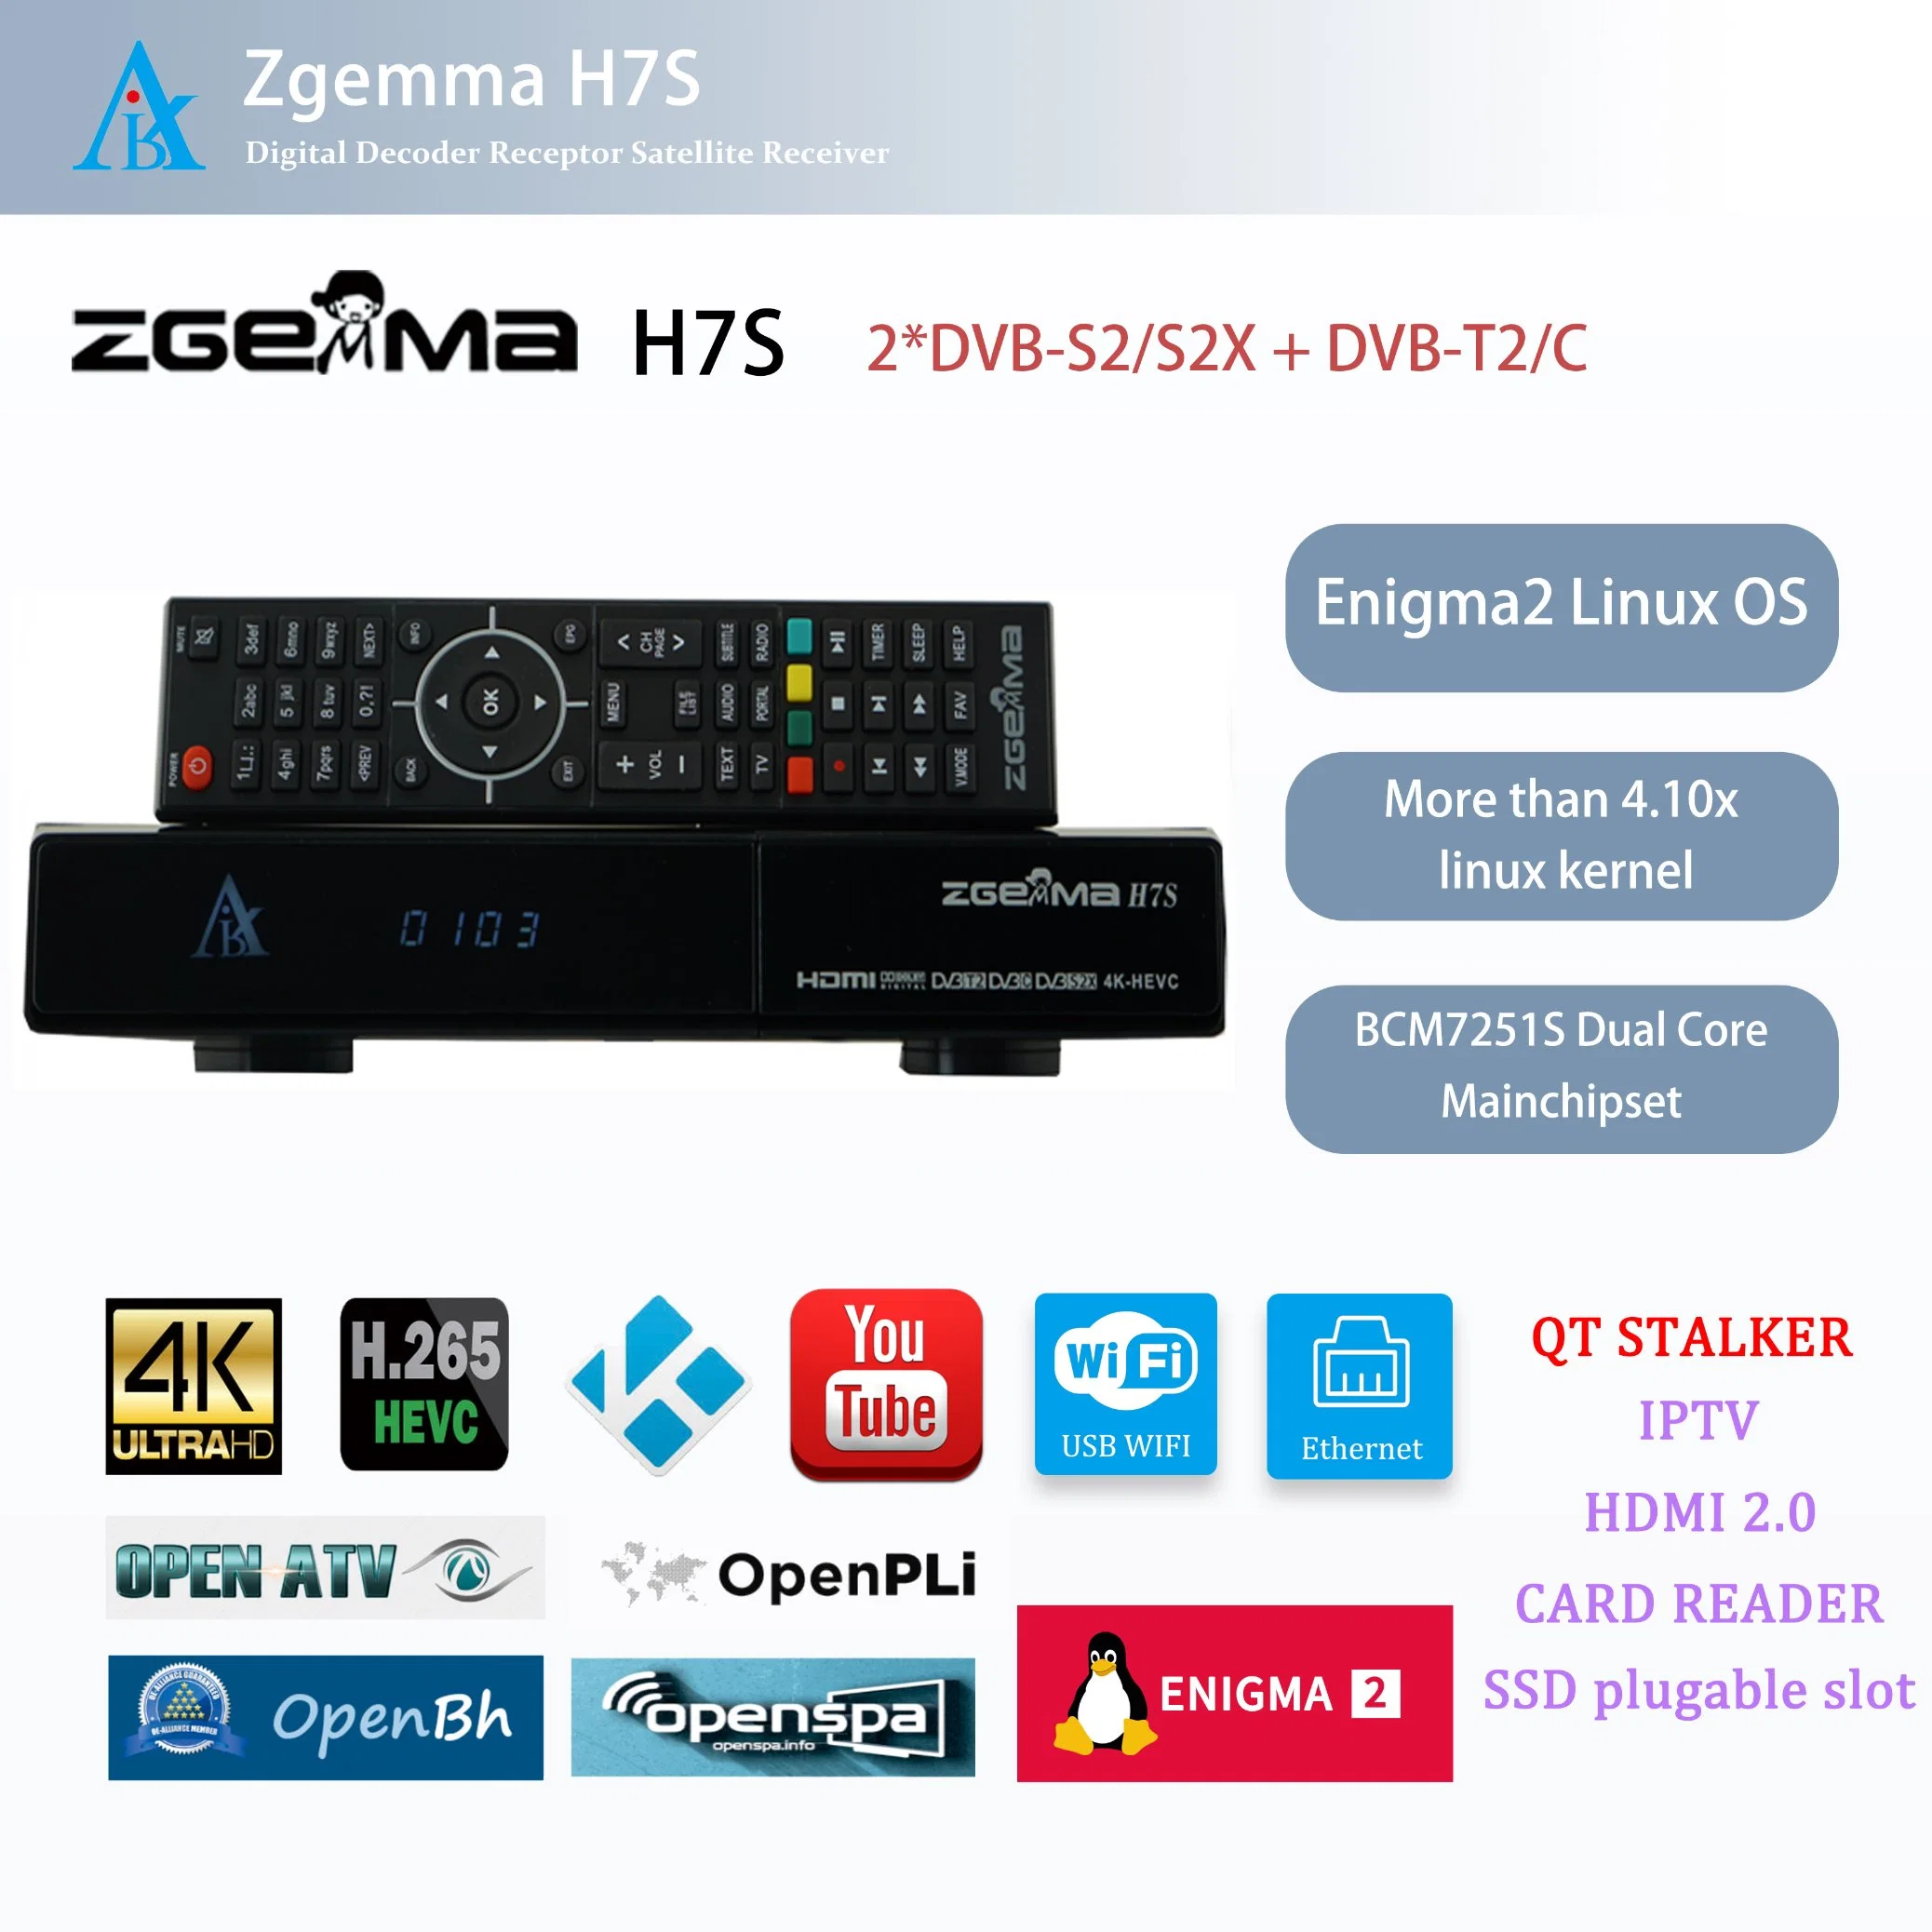 High Definition Satelliten TV Receiver - Zgemma H7s mit Enigma2 Linux OS und 2*DVB-S2/S2X + DVB-T2/C Hybrid Tuner